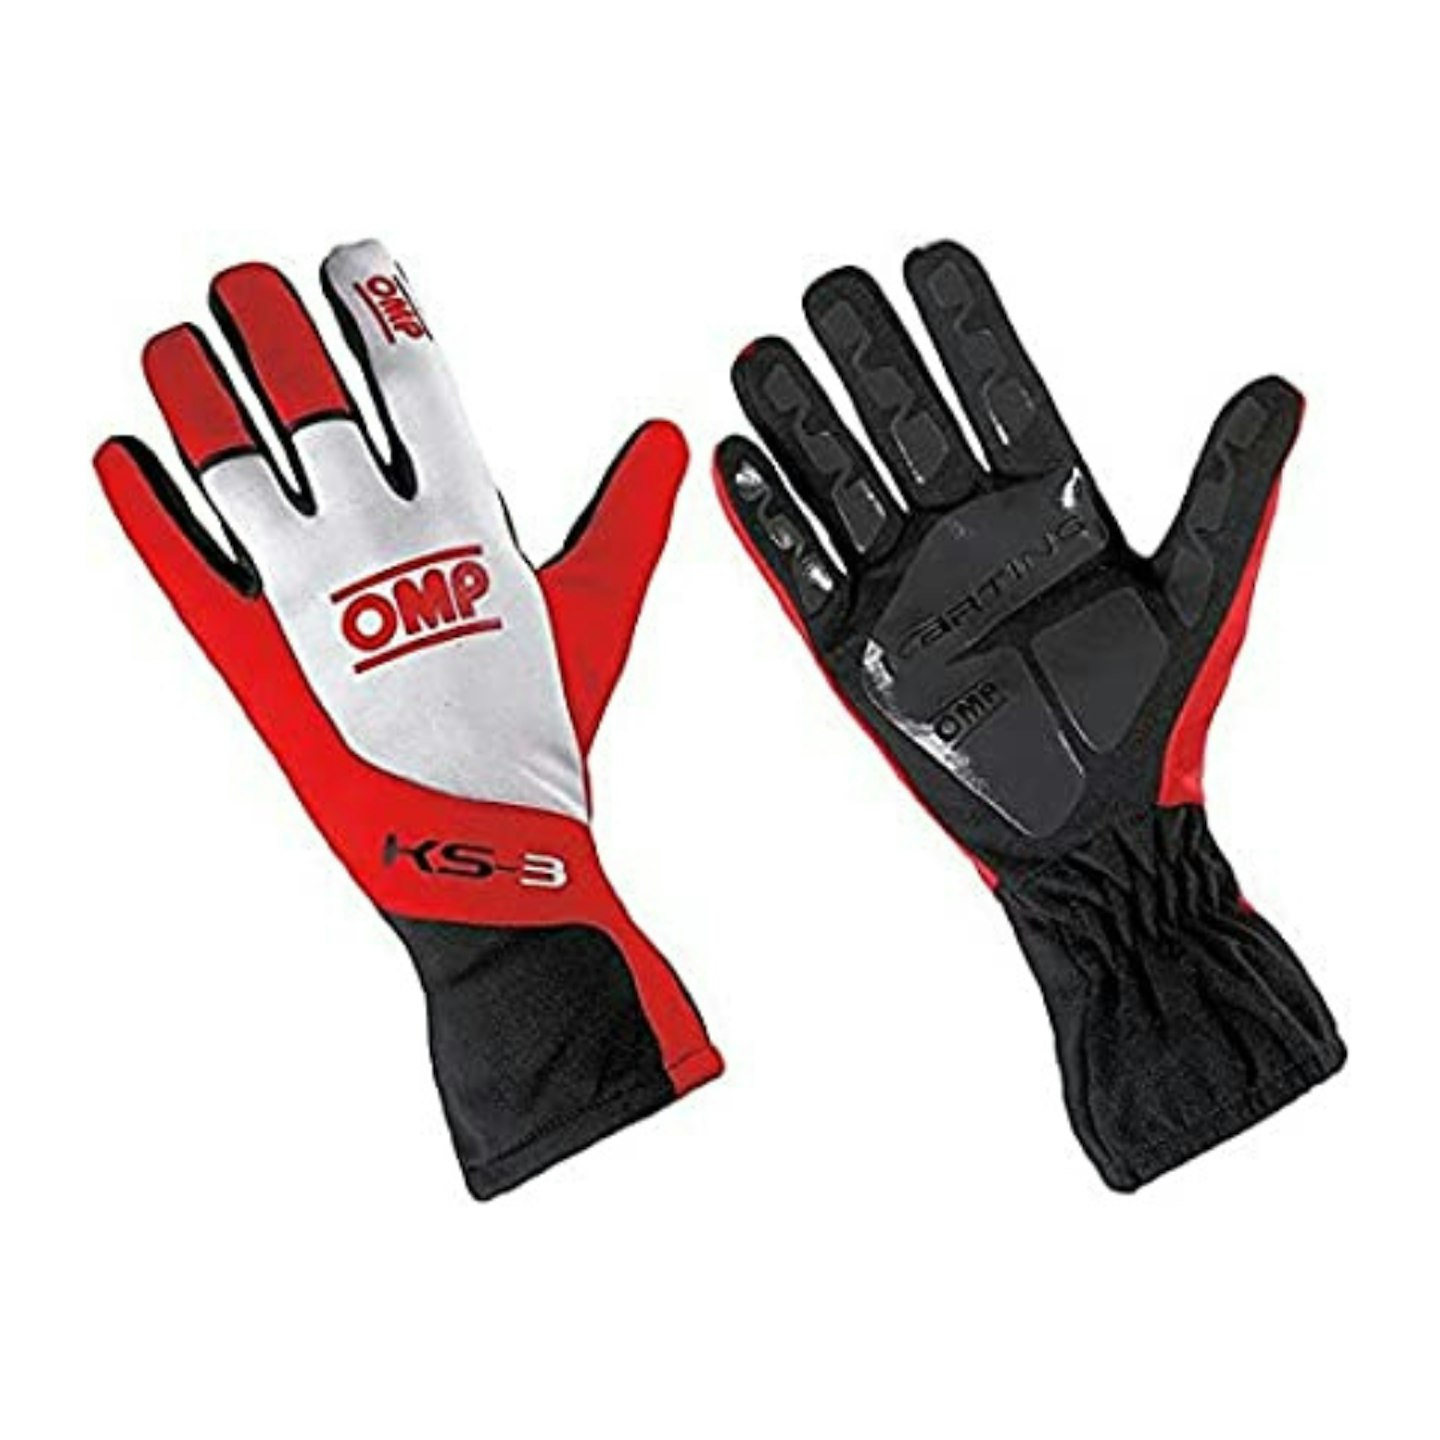 Omp Ks-3 Gloves